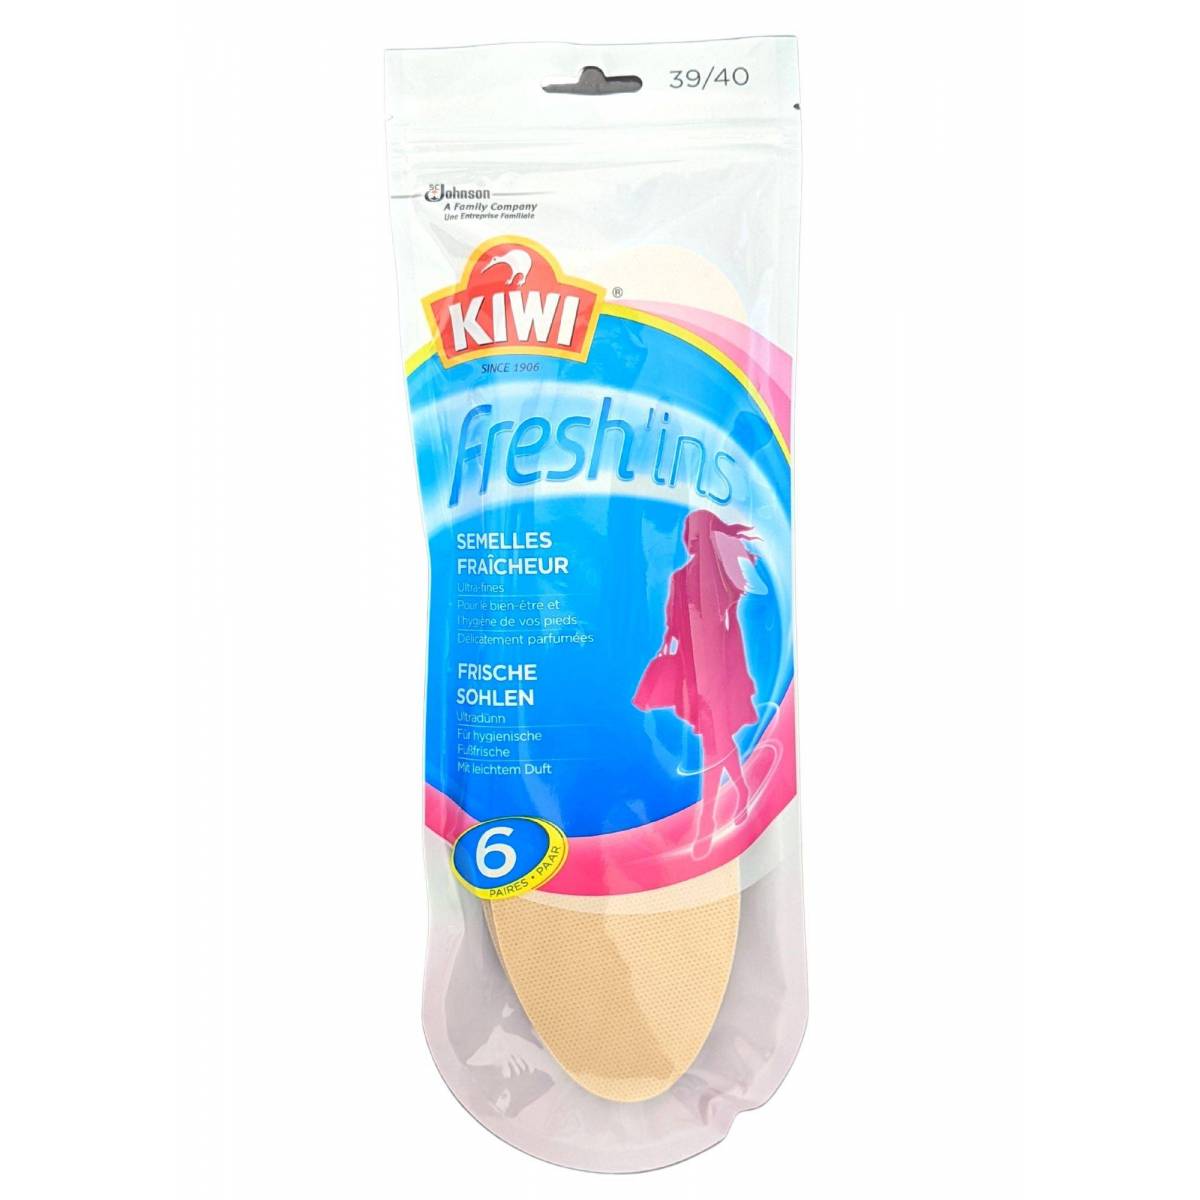 6 Paar Kiwi Fresh'Ins desodorierende Einlegesohlen Größe 39-40